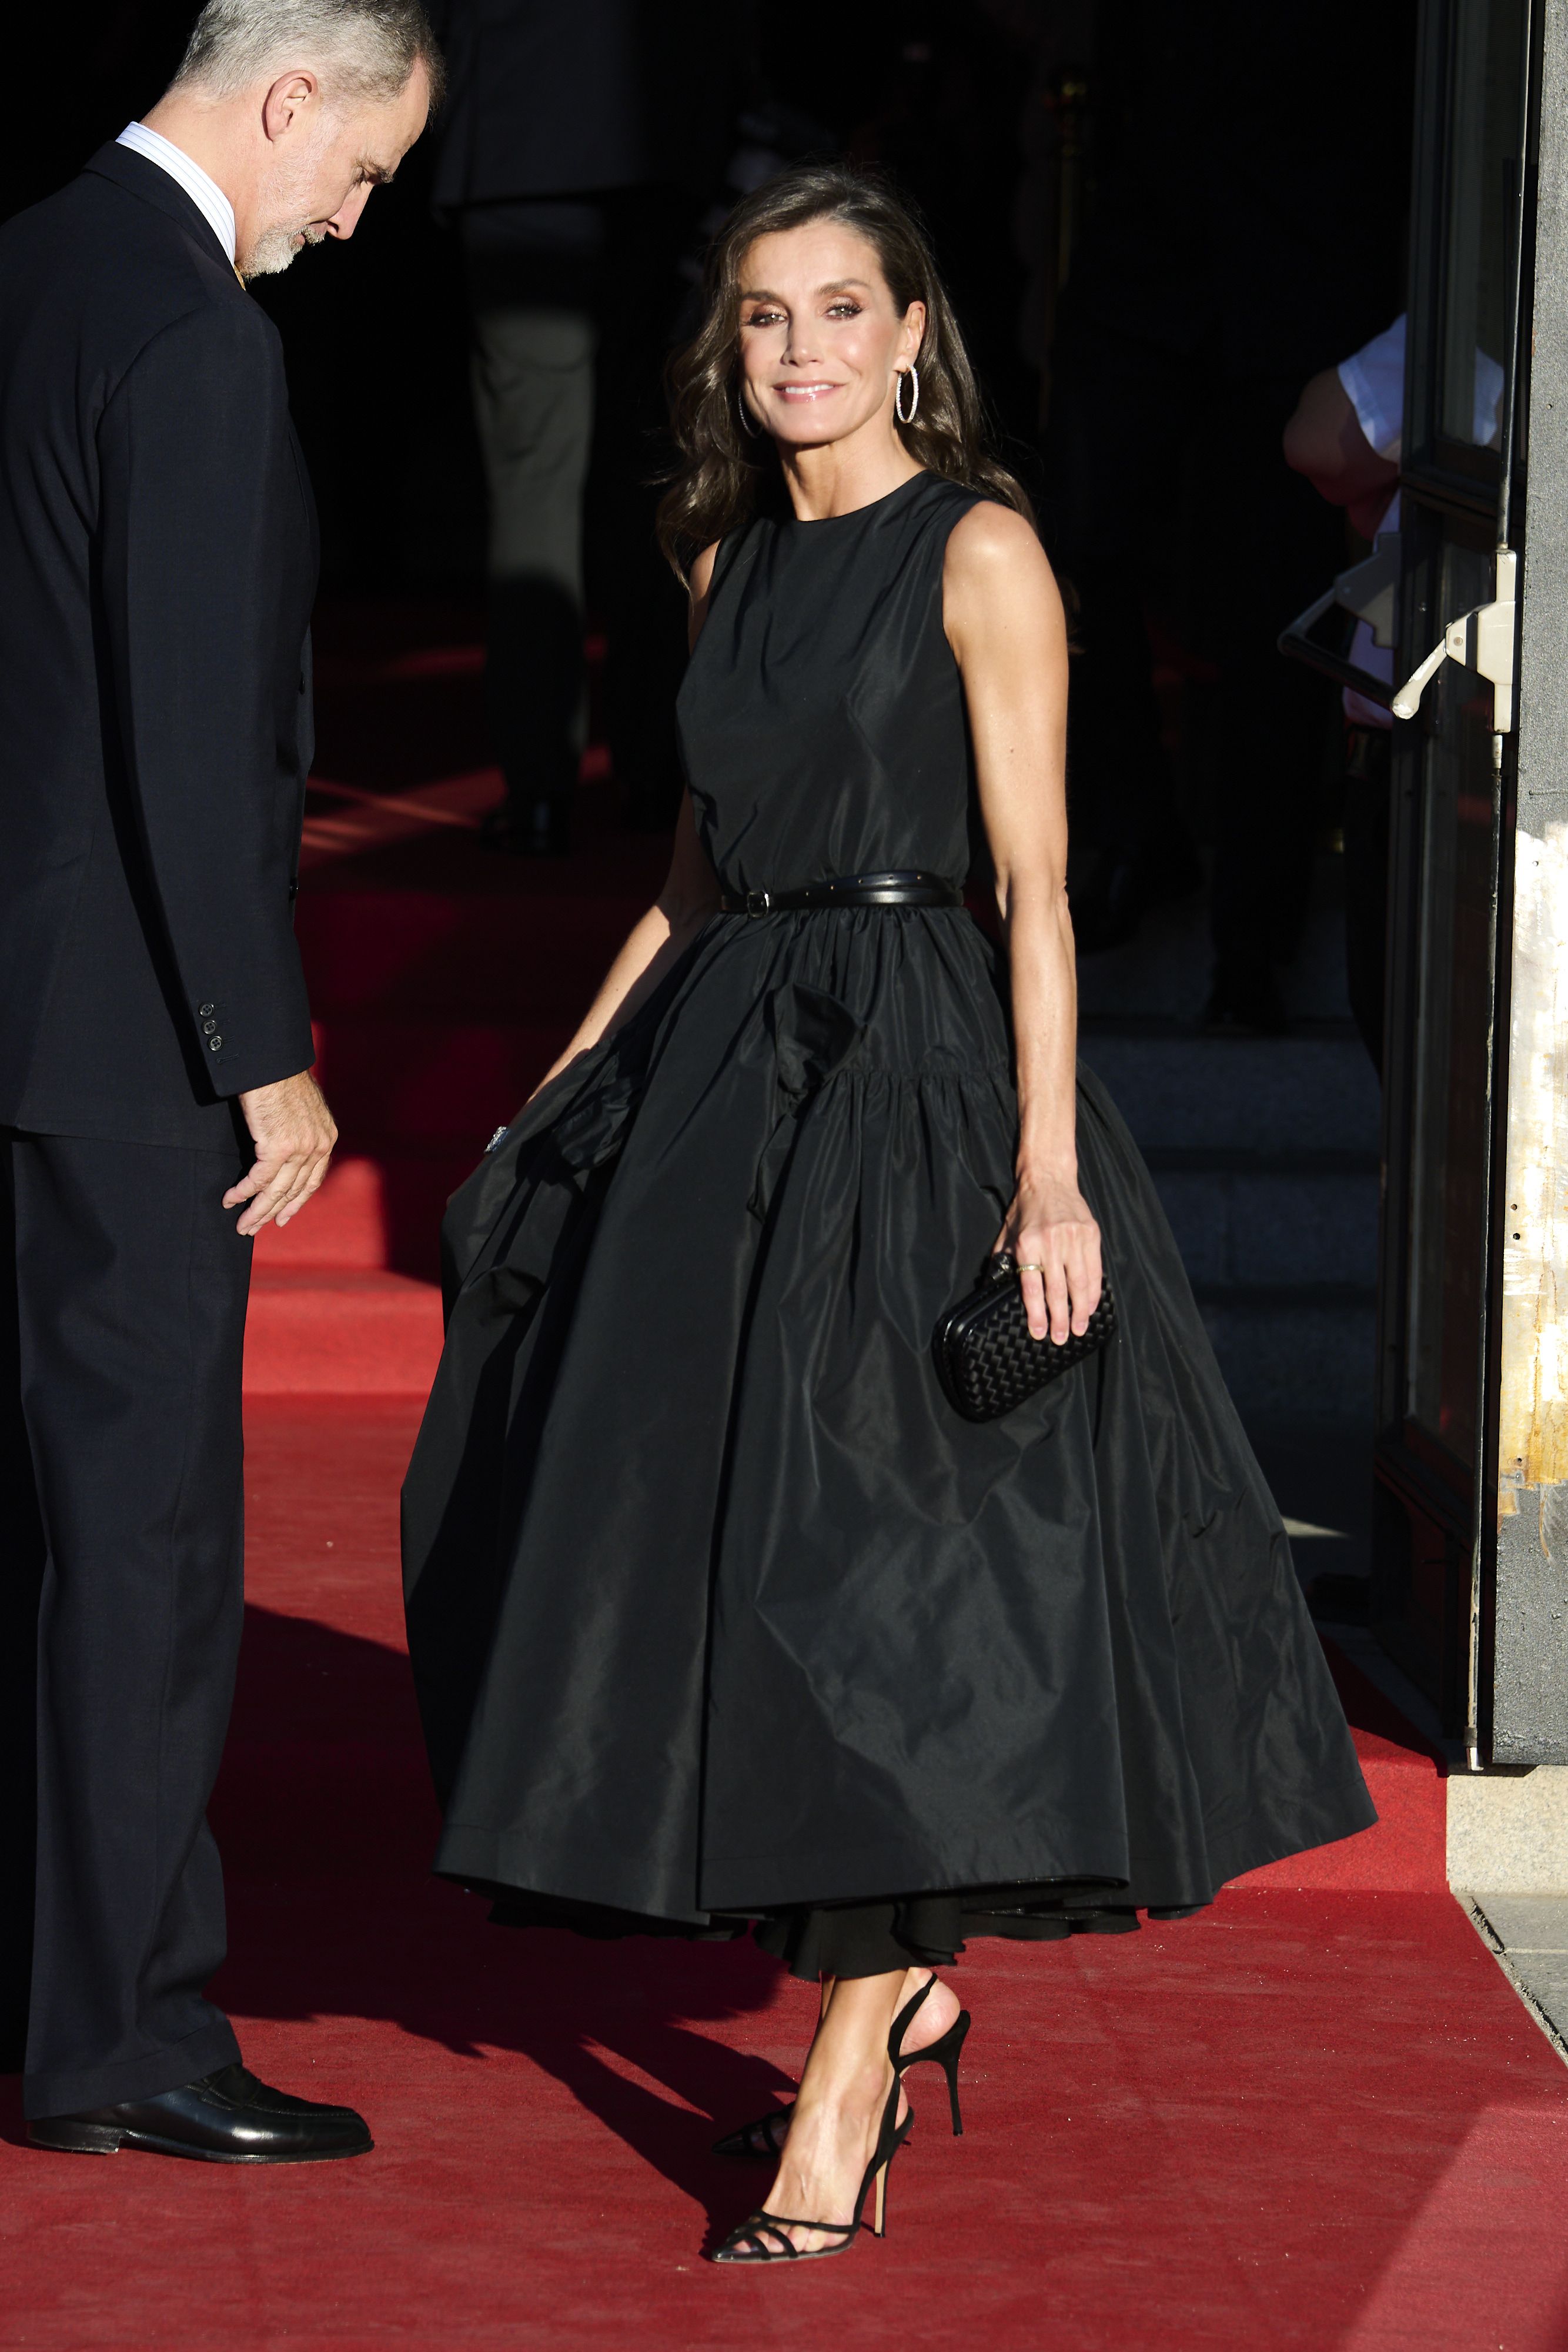 La reina Letizia luce clásico vestido negro y elegantes zapatos  transparentes